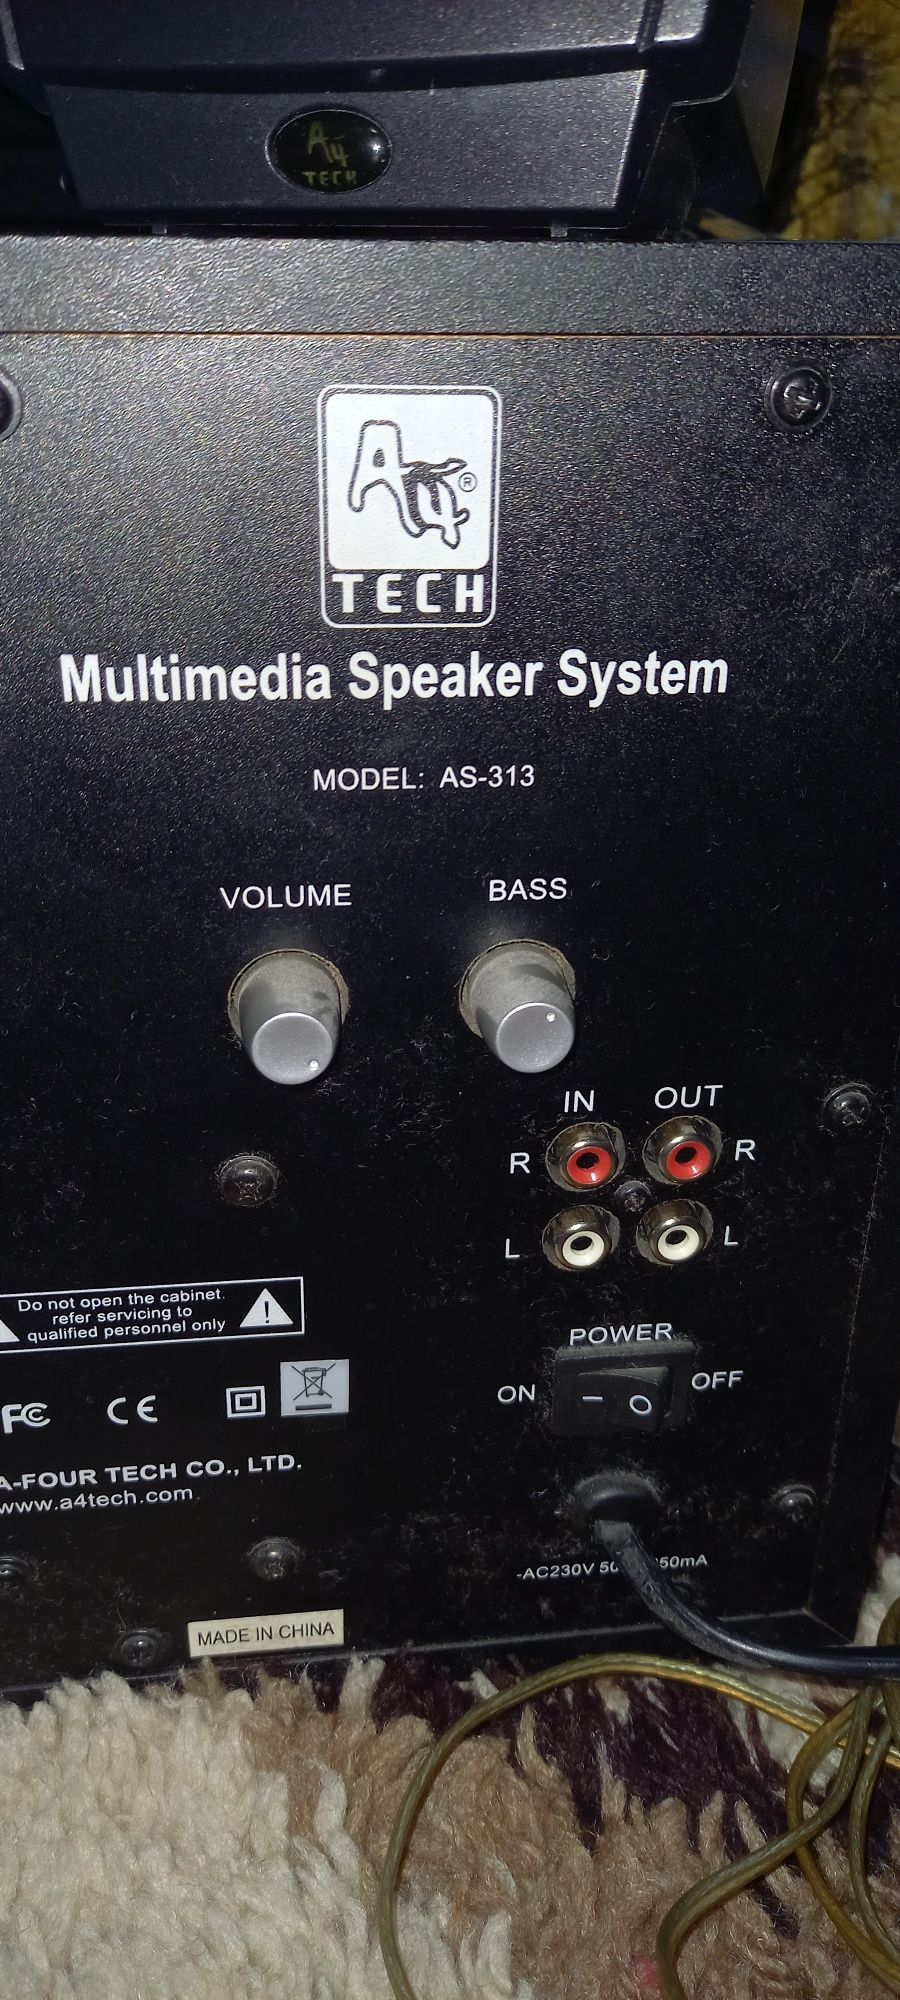 A4 tech multimedia speaker systems